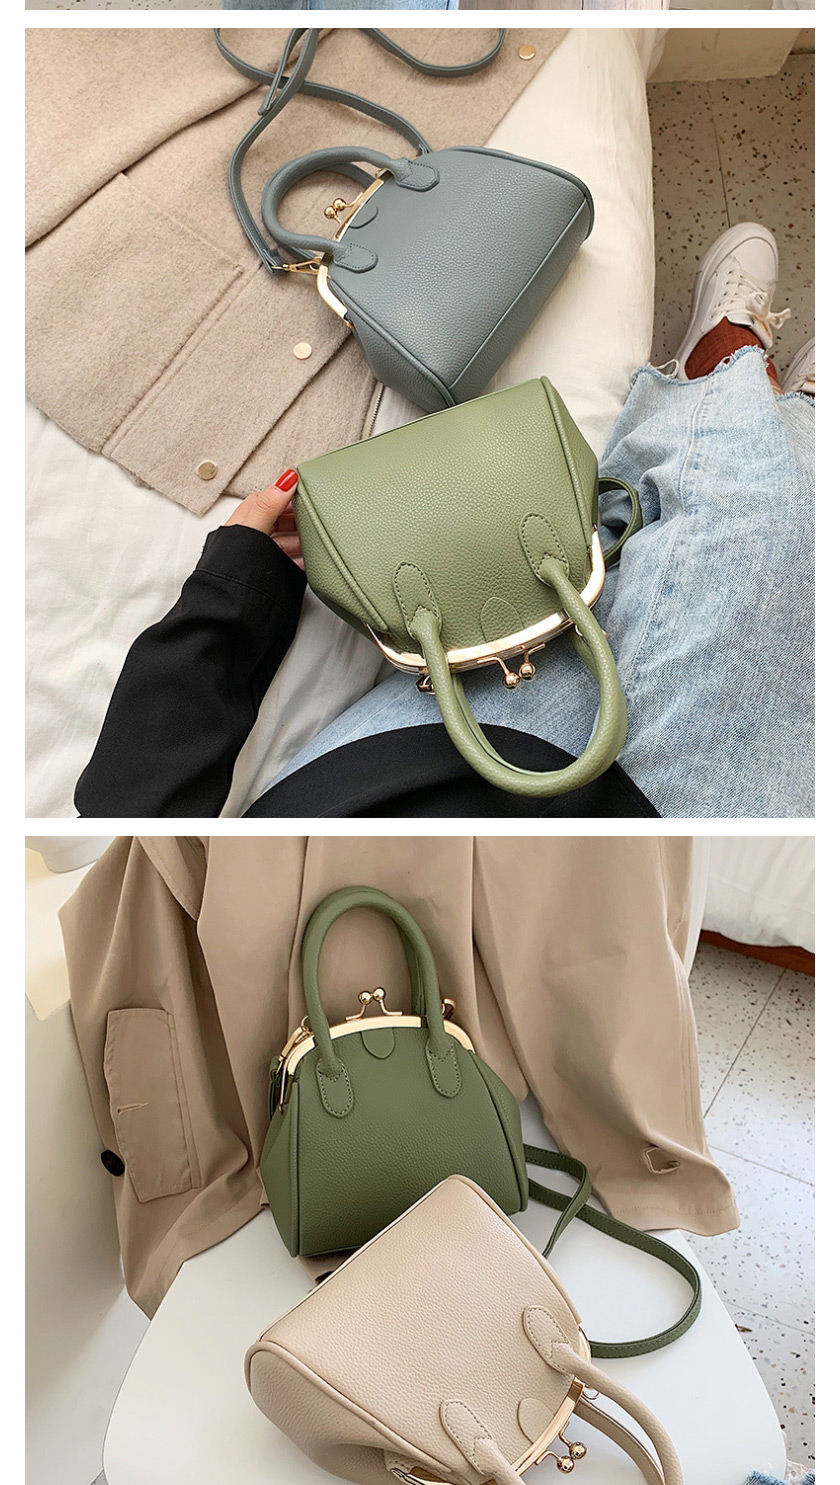 Fashion Black One-shoulder Portable Shell Bag,Handbags